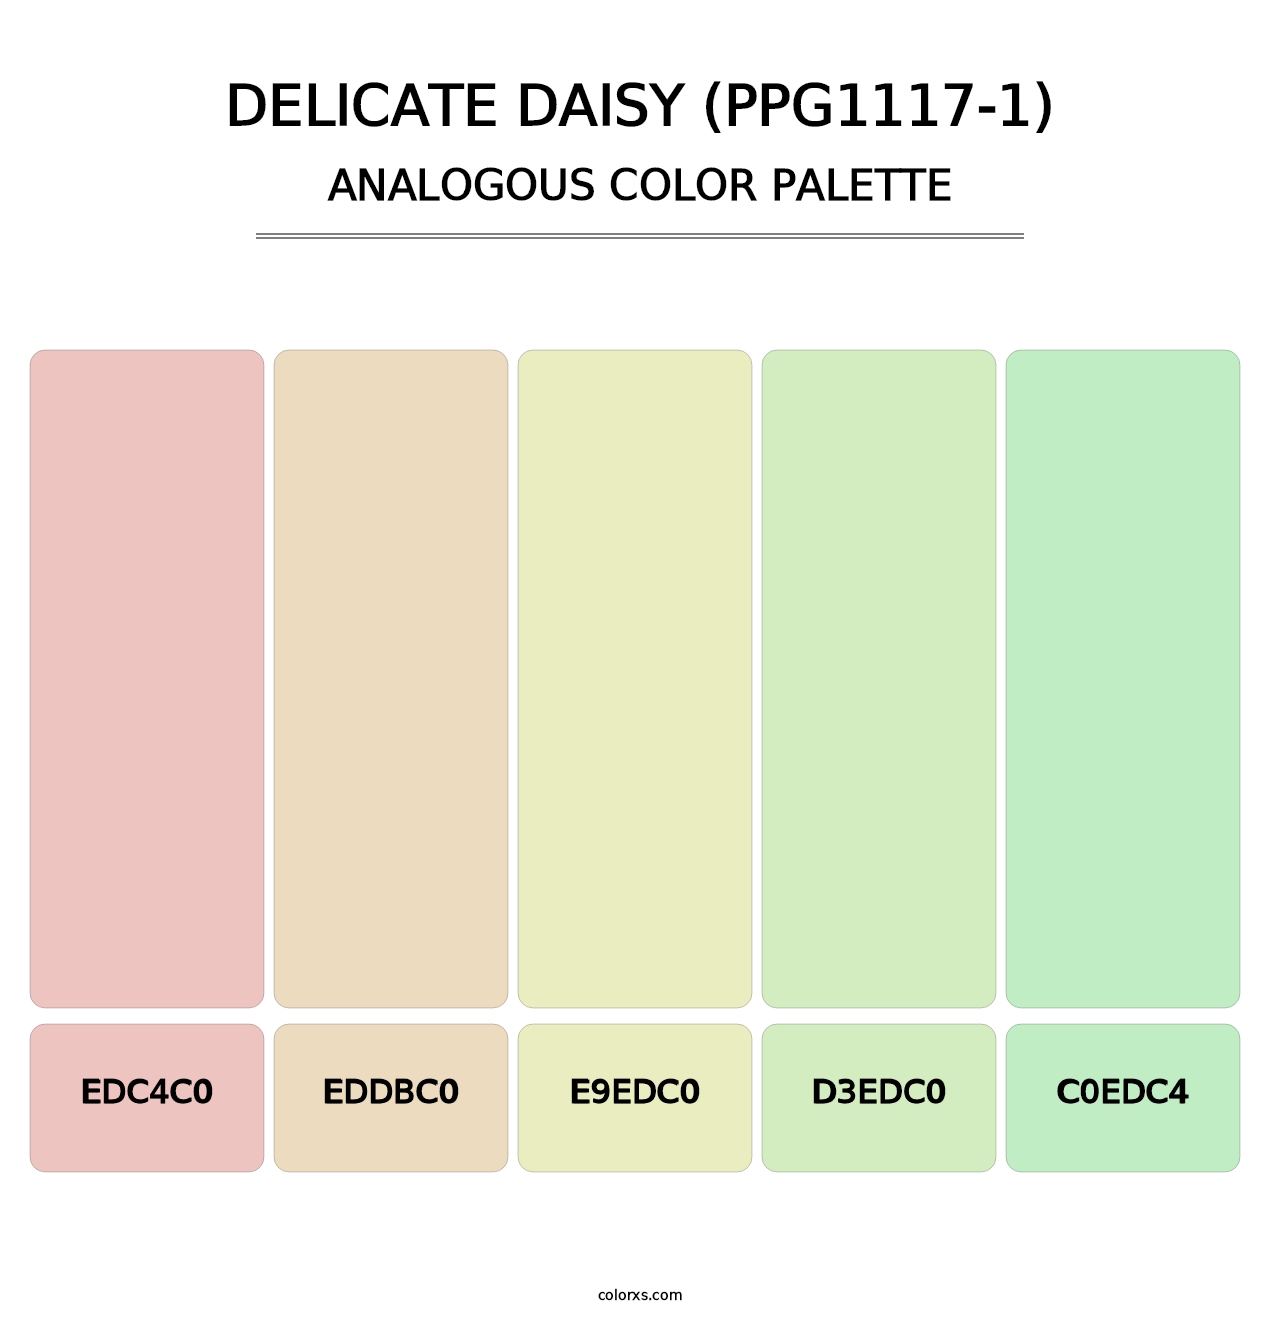 Delicate Daisy (PPG1117-1) - Analogous Color Palette